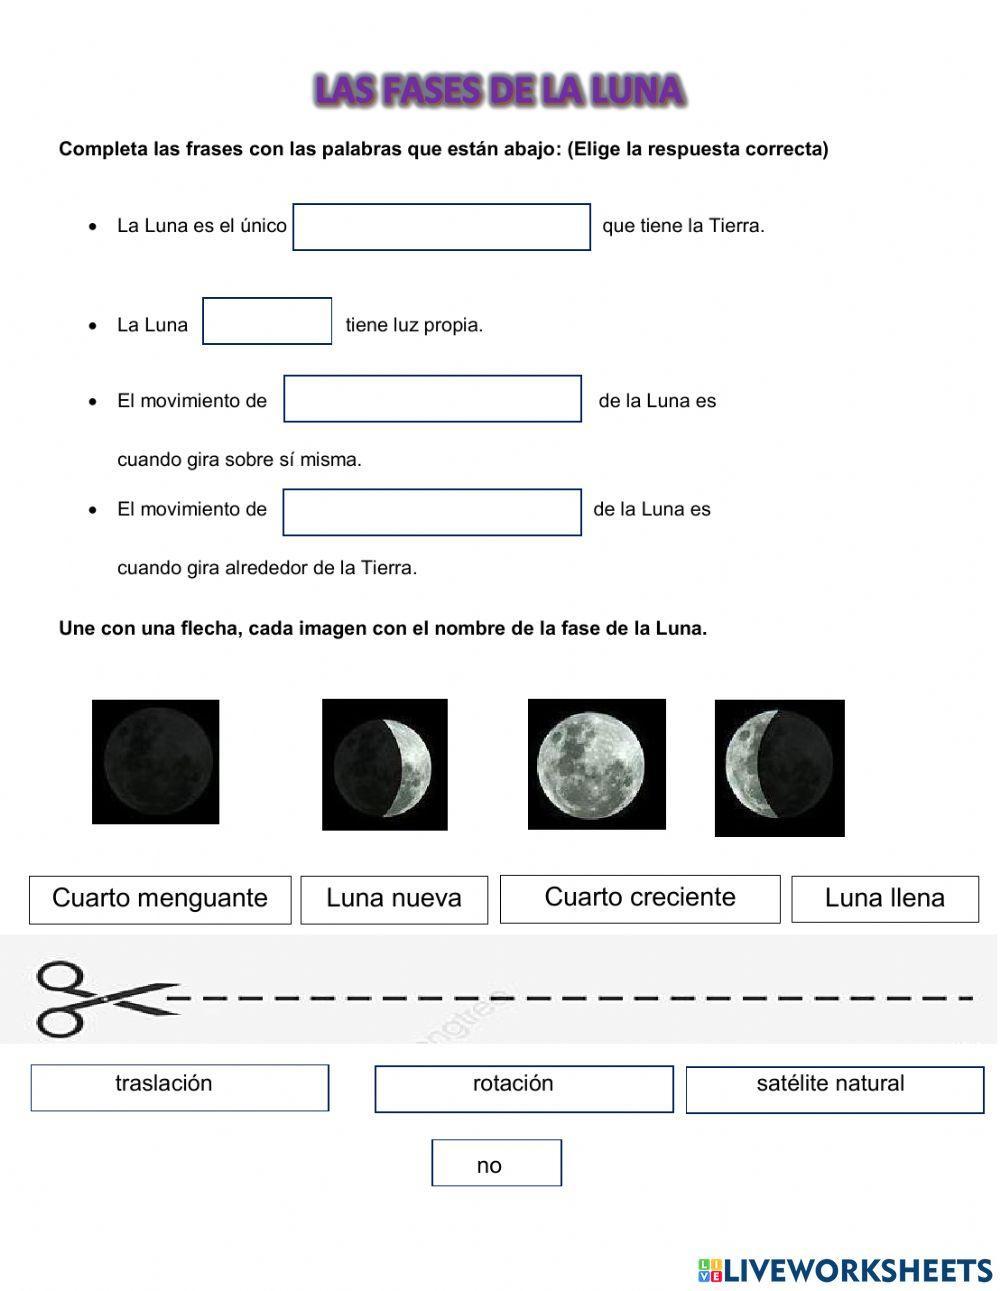 Características y fases de la Luna.